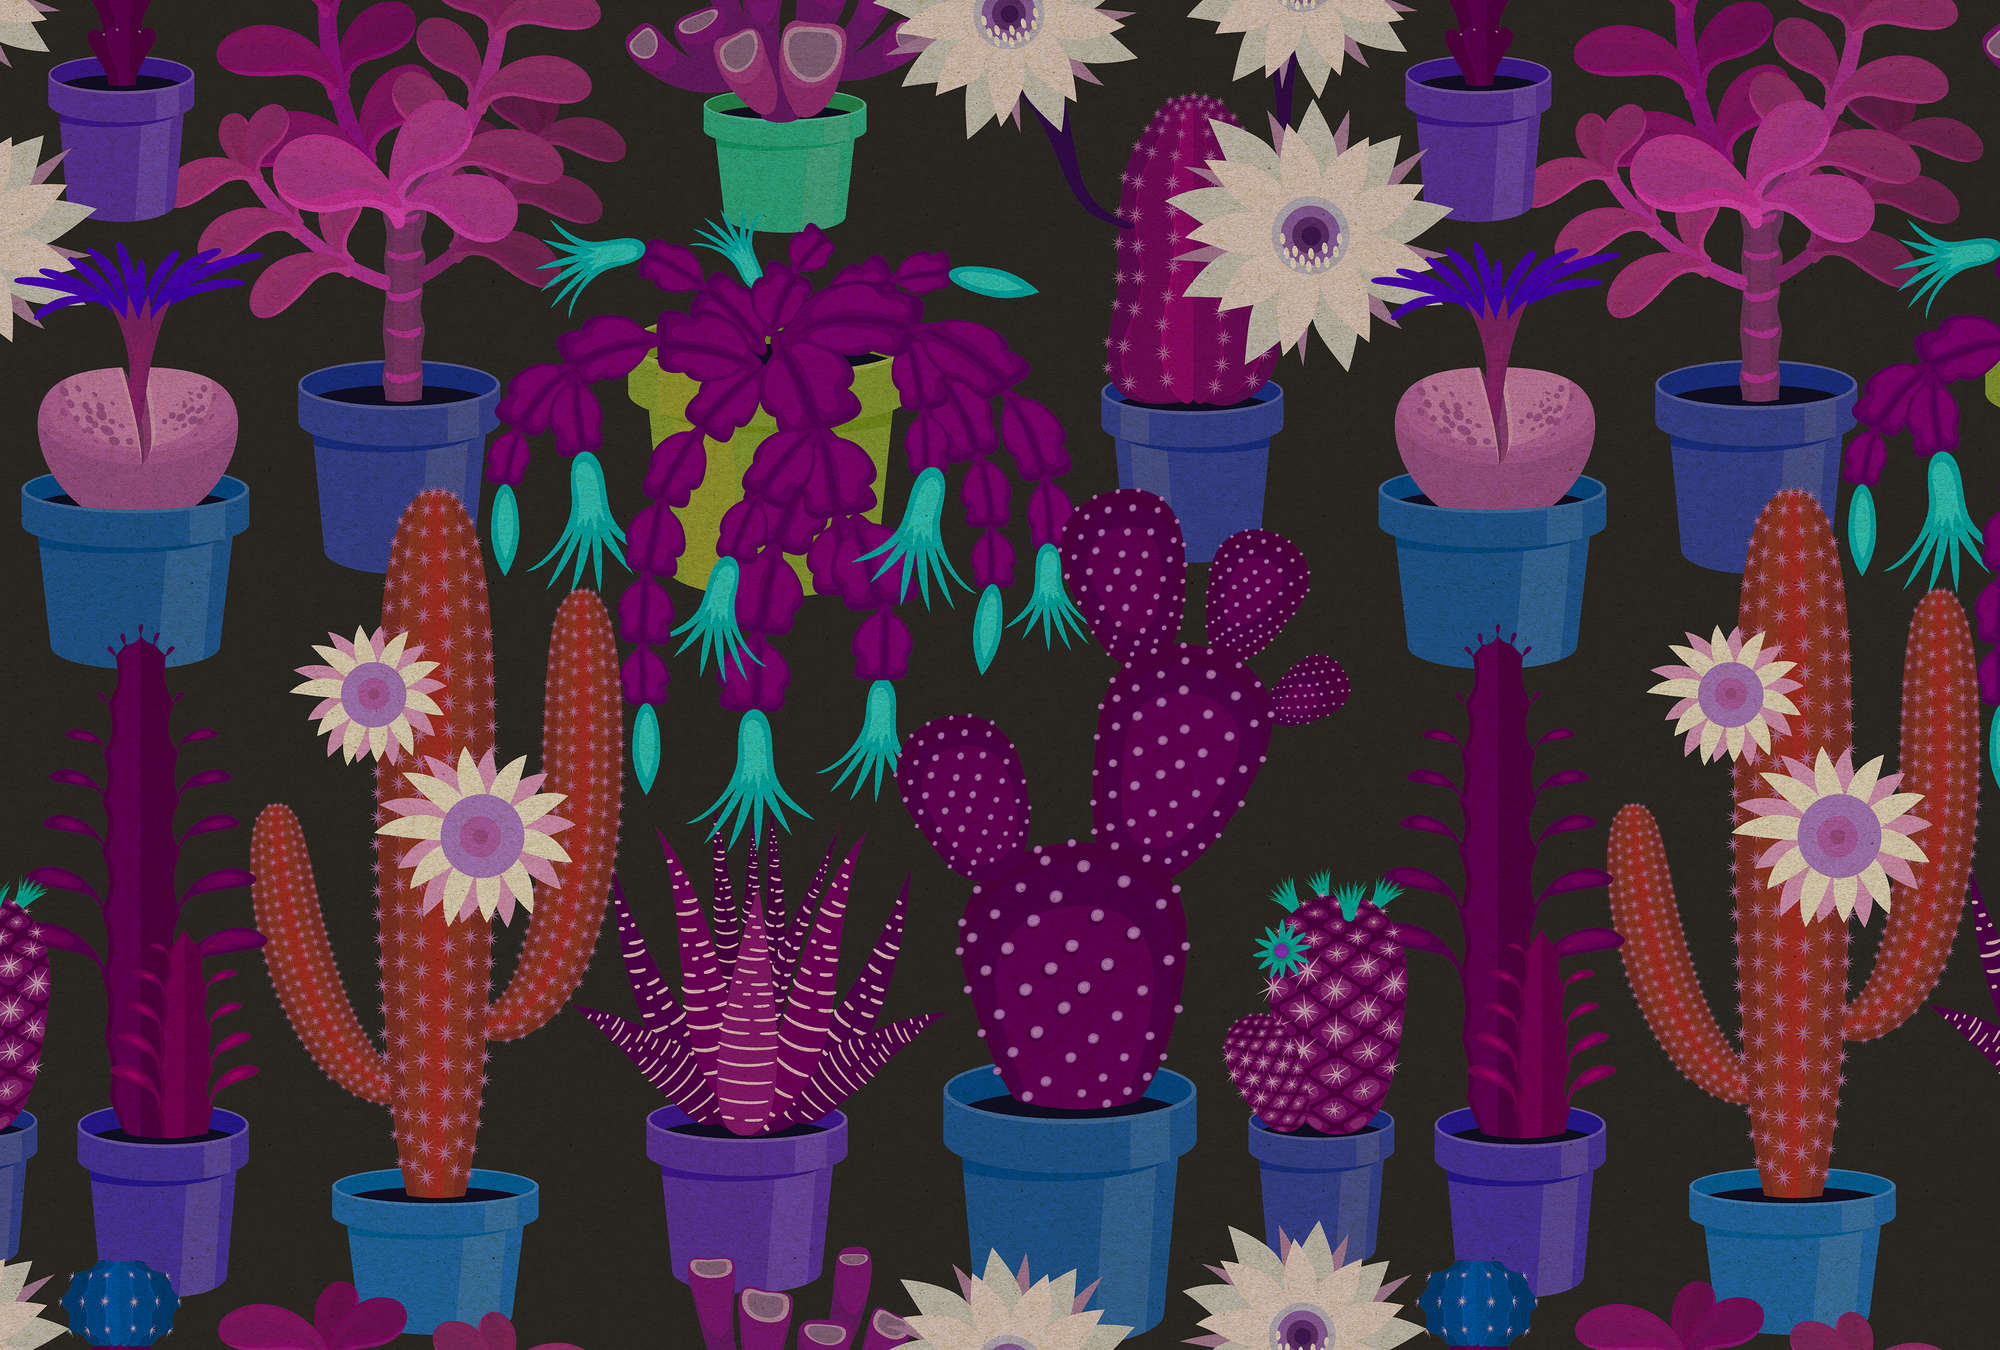             Cactus garden 1 - Carta da parati con struttura in cartone con cactus colorati in stile fumetto - Blu, Arancione | Natura qualita consistenza in tessuto non tessuto
        